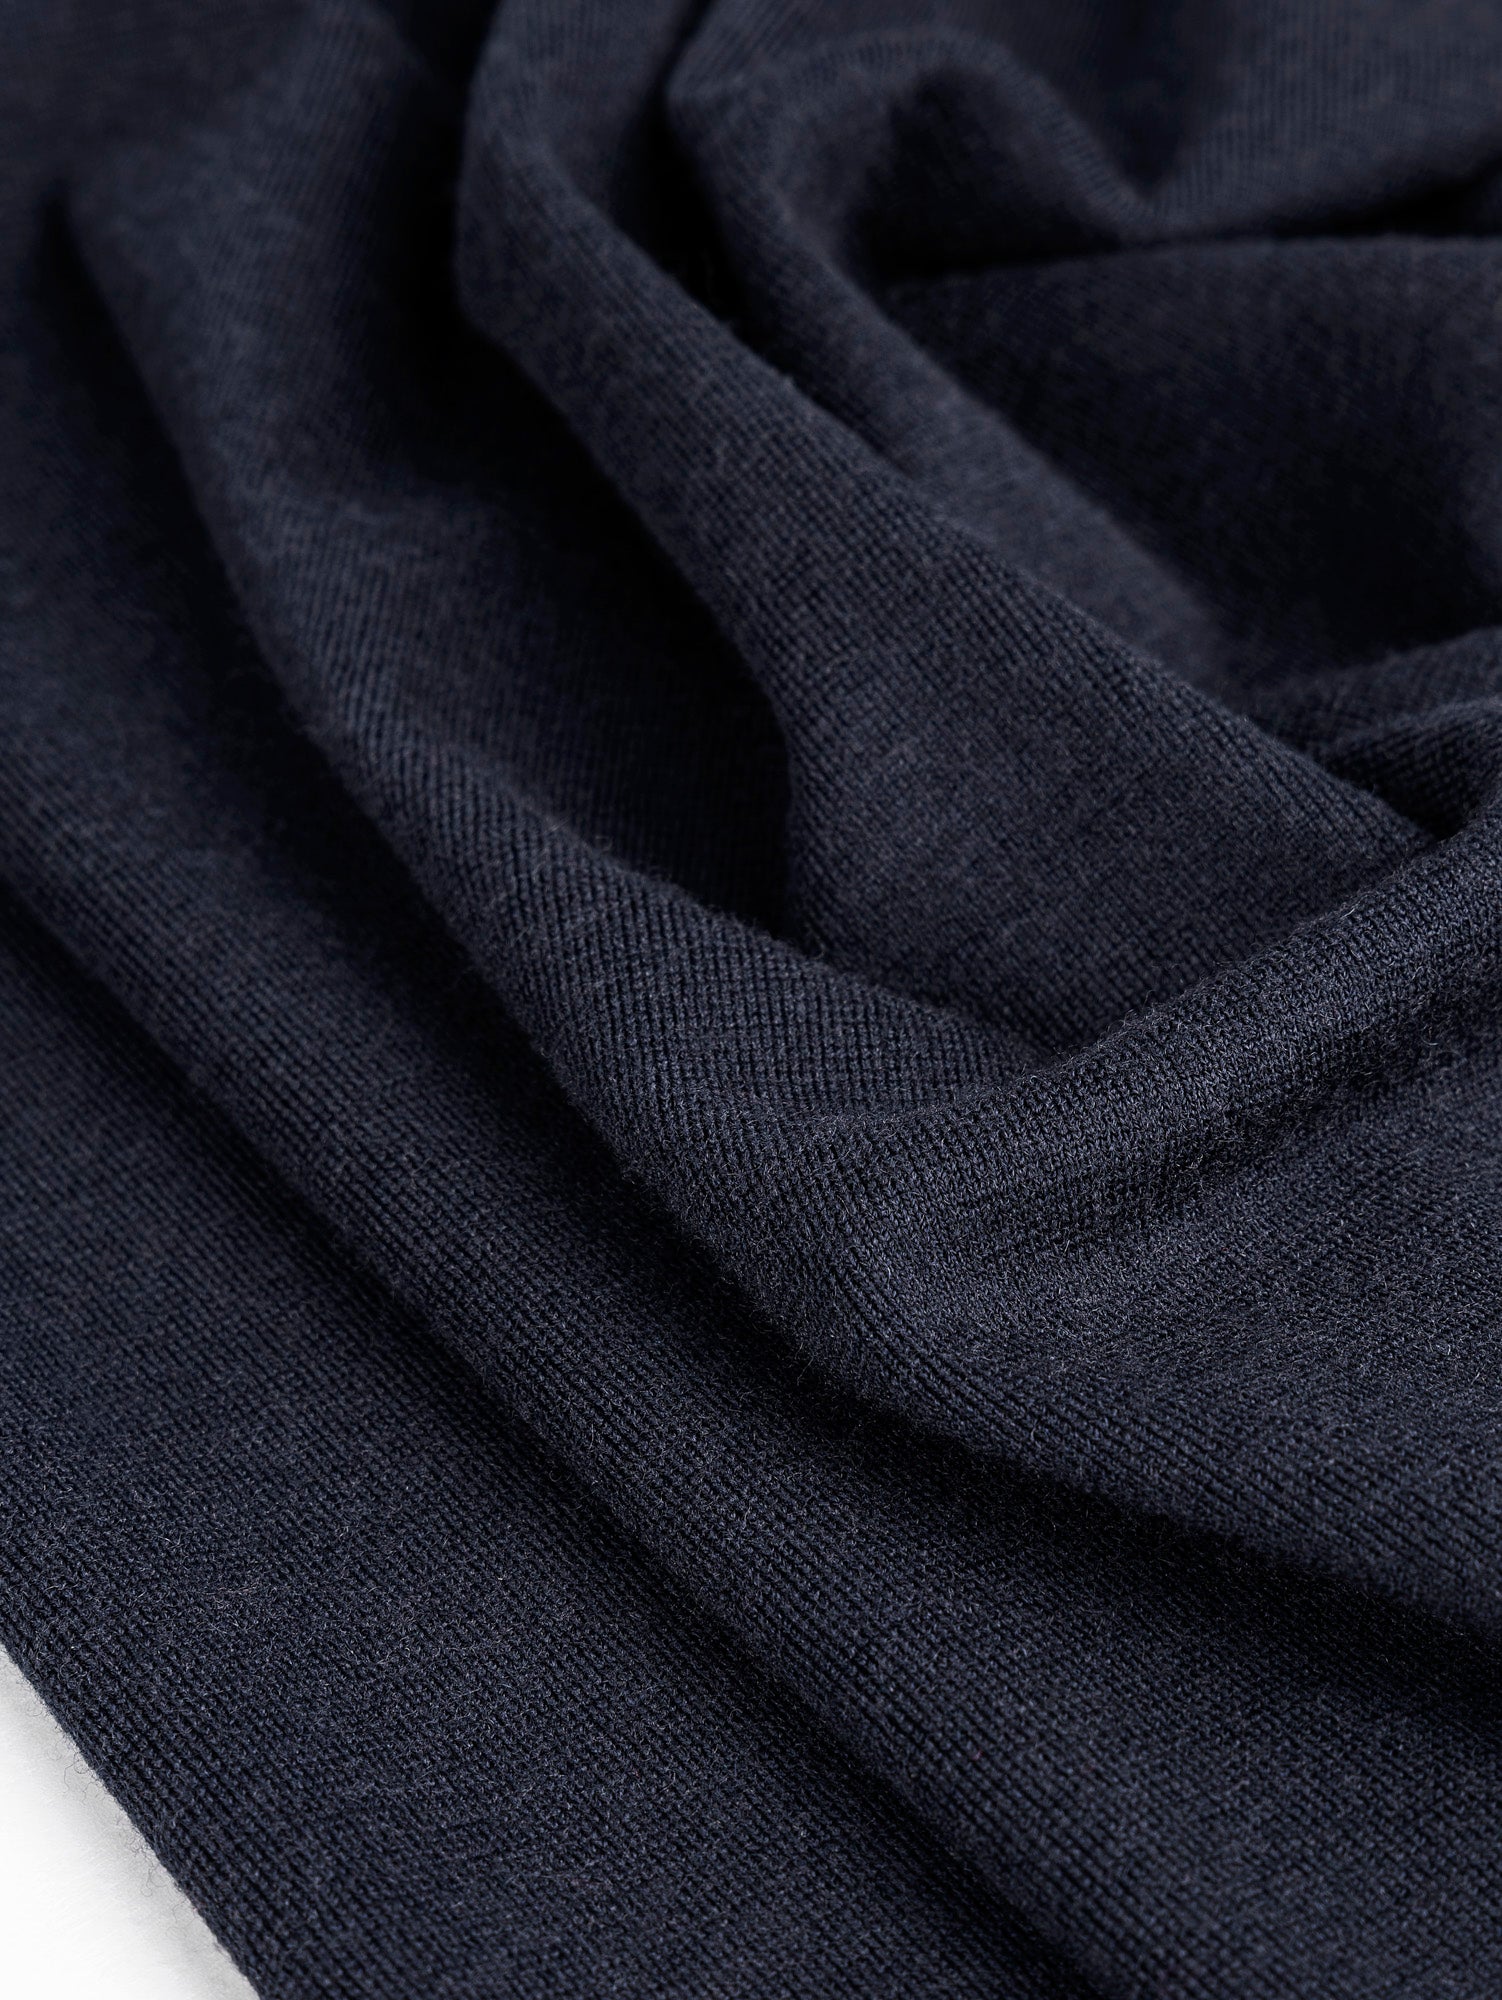 Premium Wool Felt Ironing Pad, 100% New Zealand Merino Wool